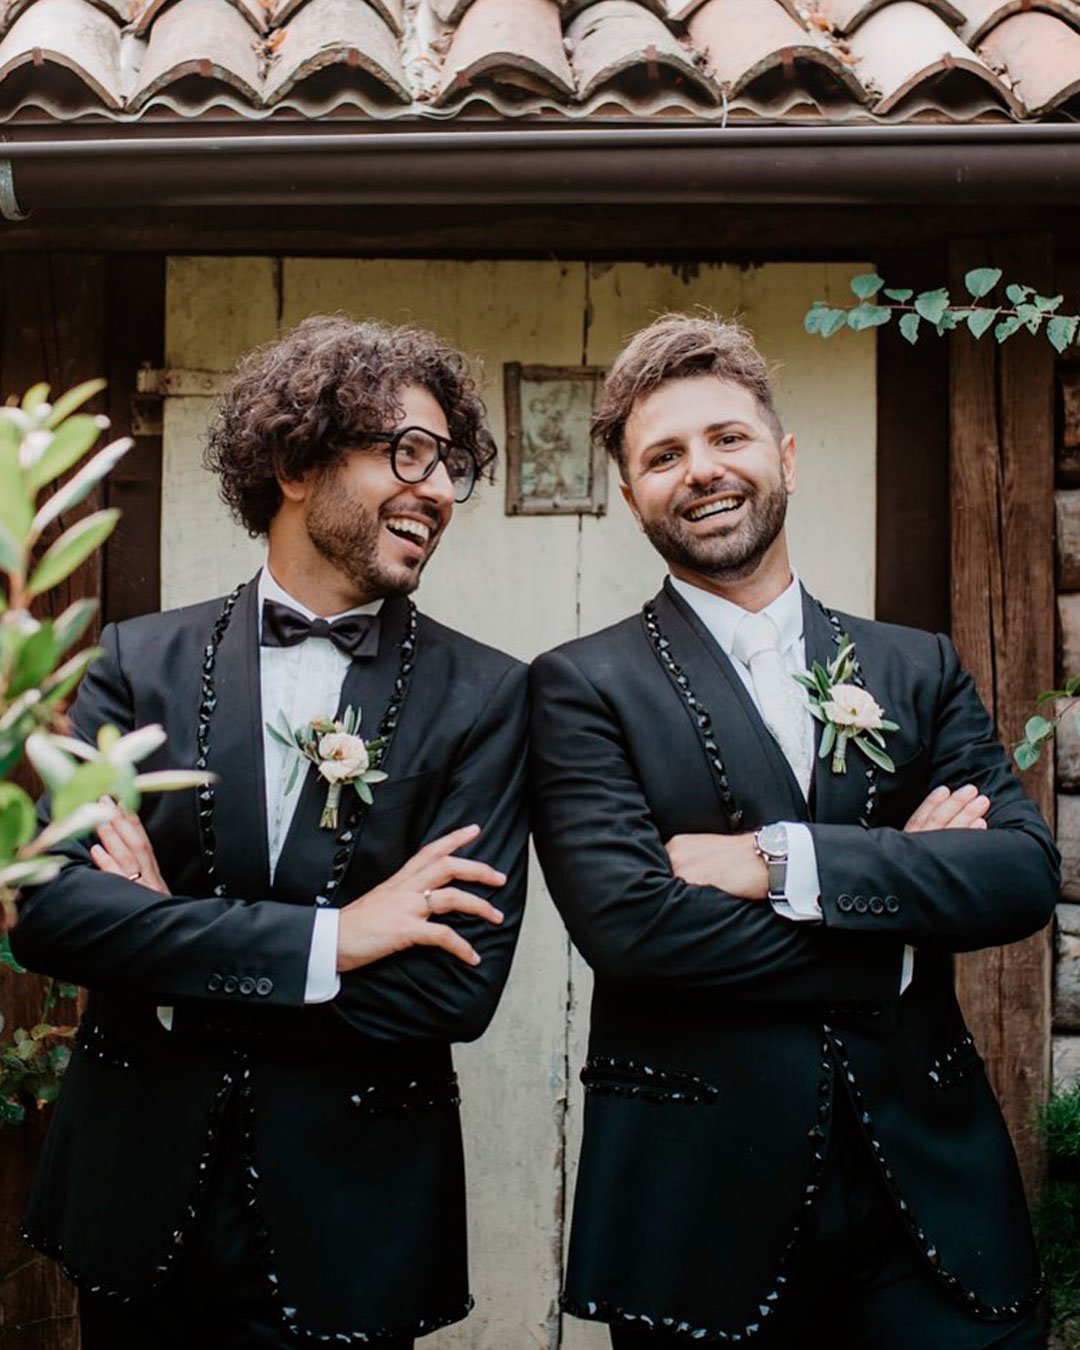 lesbian wedding ideas attire grooms